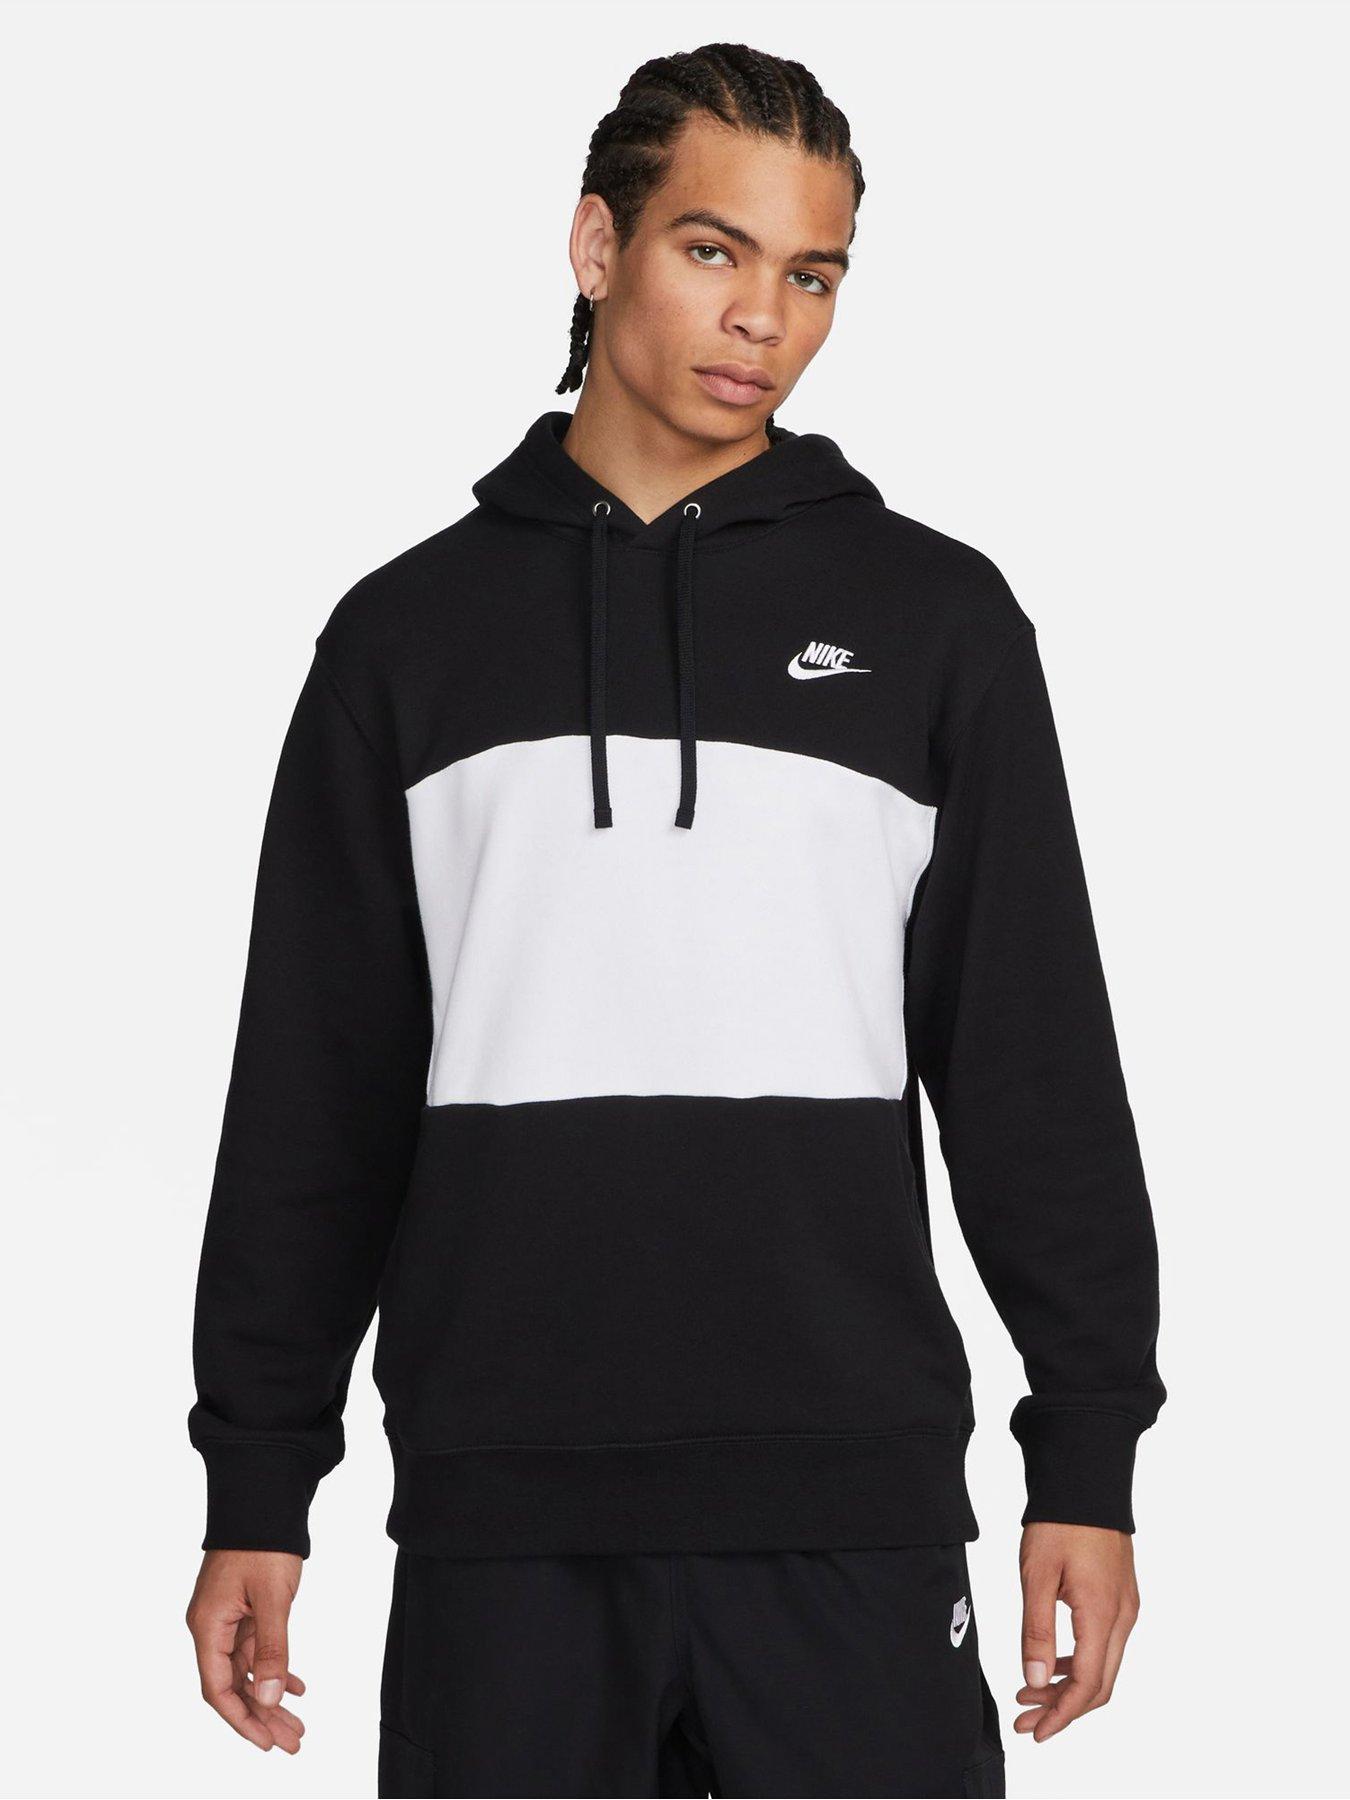 M, Hoodies & sweatshirts, Men, Nike